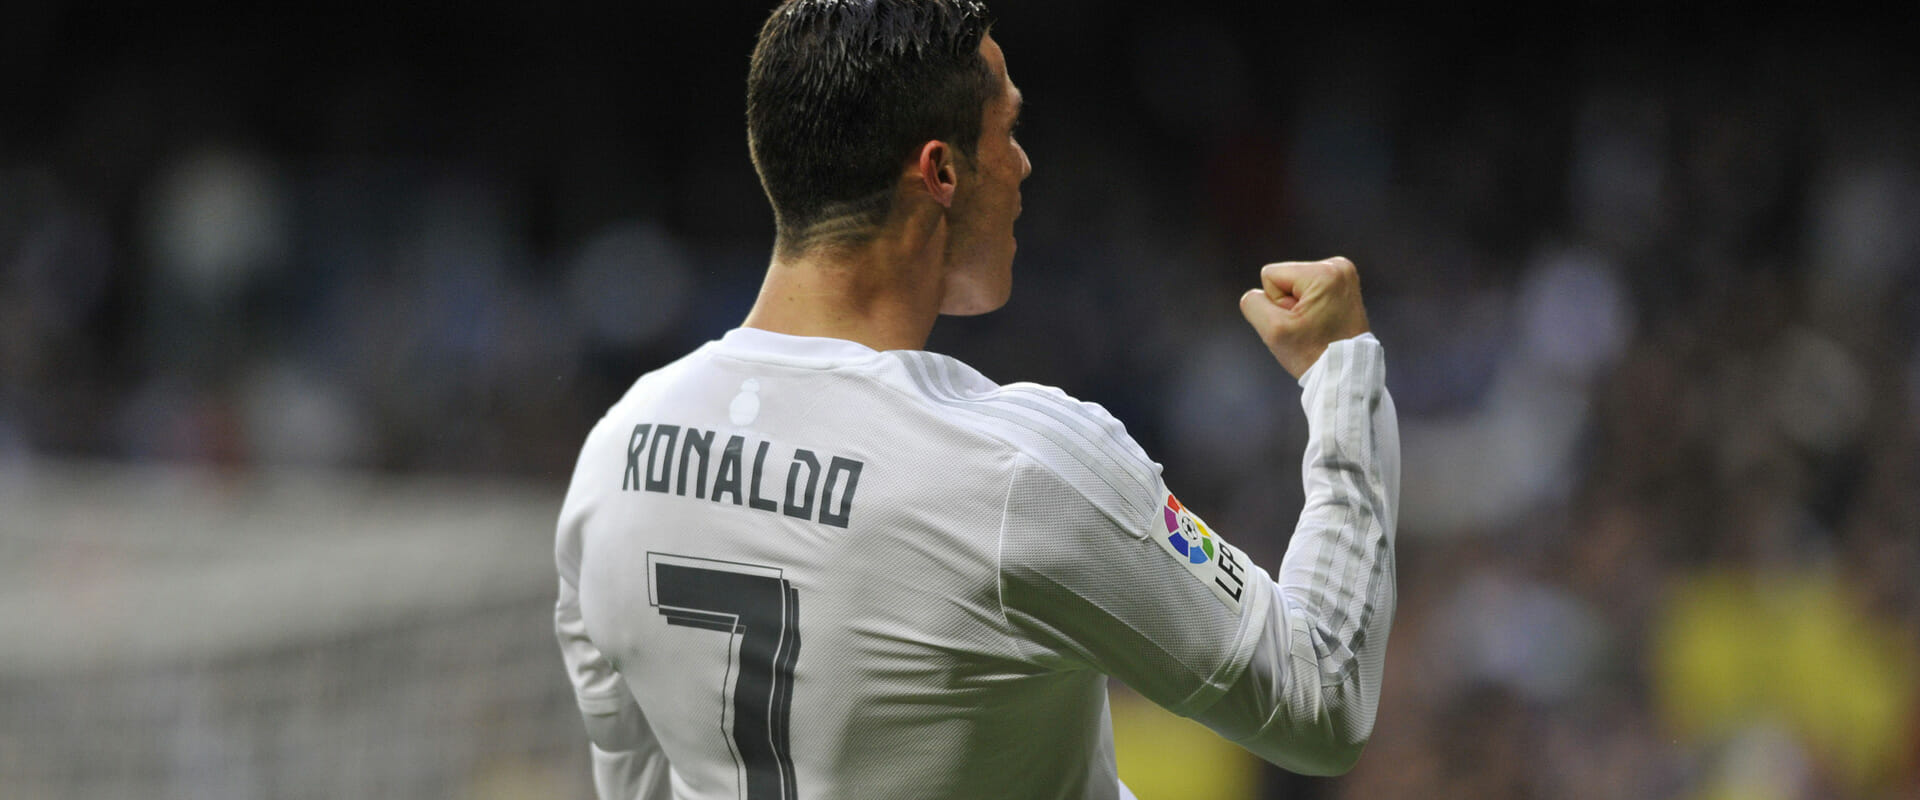 Cristiano Ronaldo, lo Sport Influencer più seguito in Europa